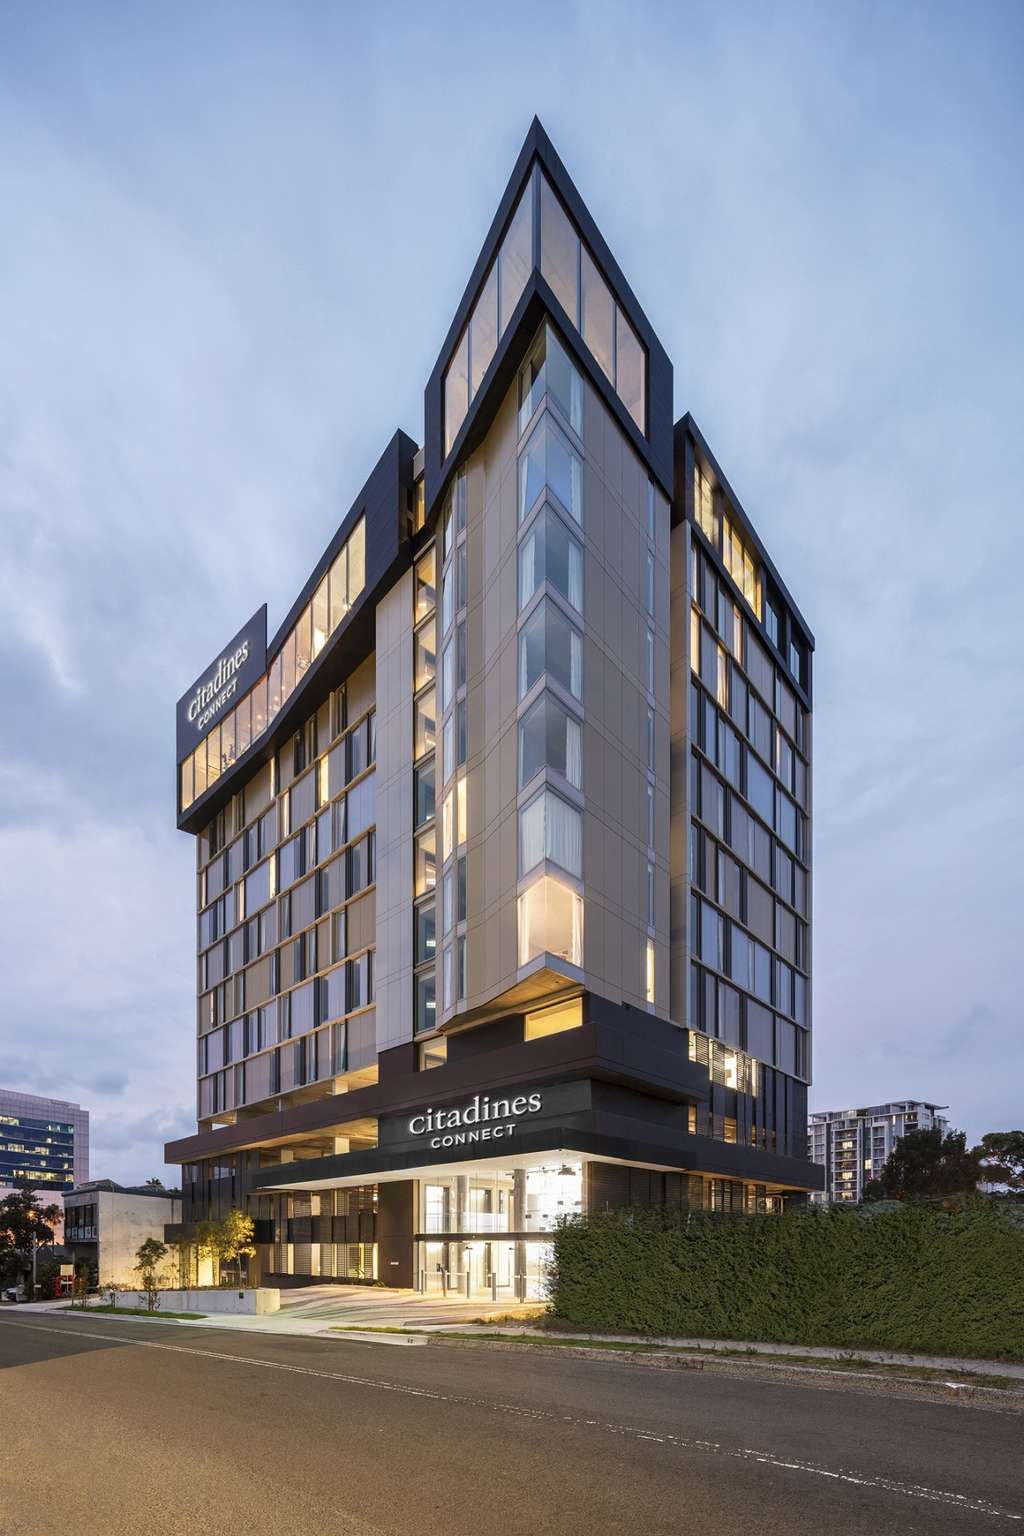 Î‘Ï€Î¿Ï„Î­Î»ÎµÏƒÎ¼Î± ÎµÎ¹ÎºÏŒÎ½Î±Ï‚ Î³Î¹Î± Ascott unveils Citadines Connect business hotels to expand short-stay offerings